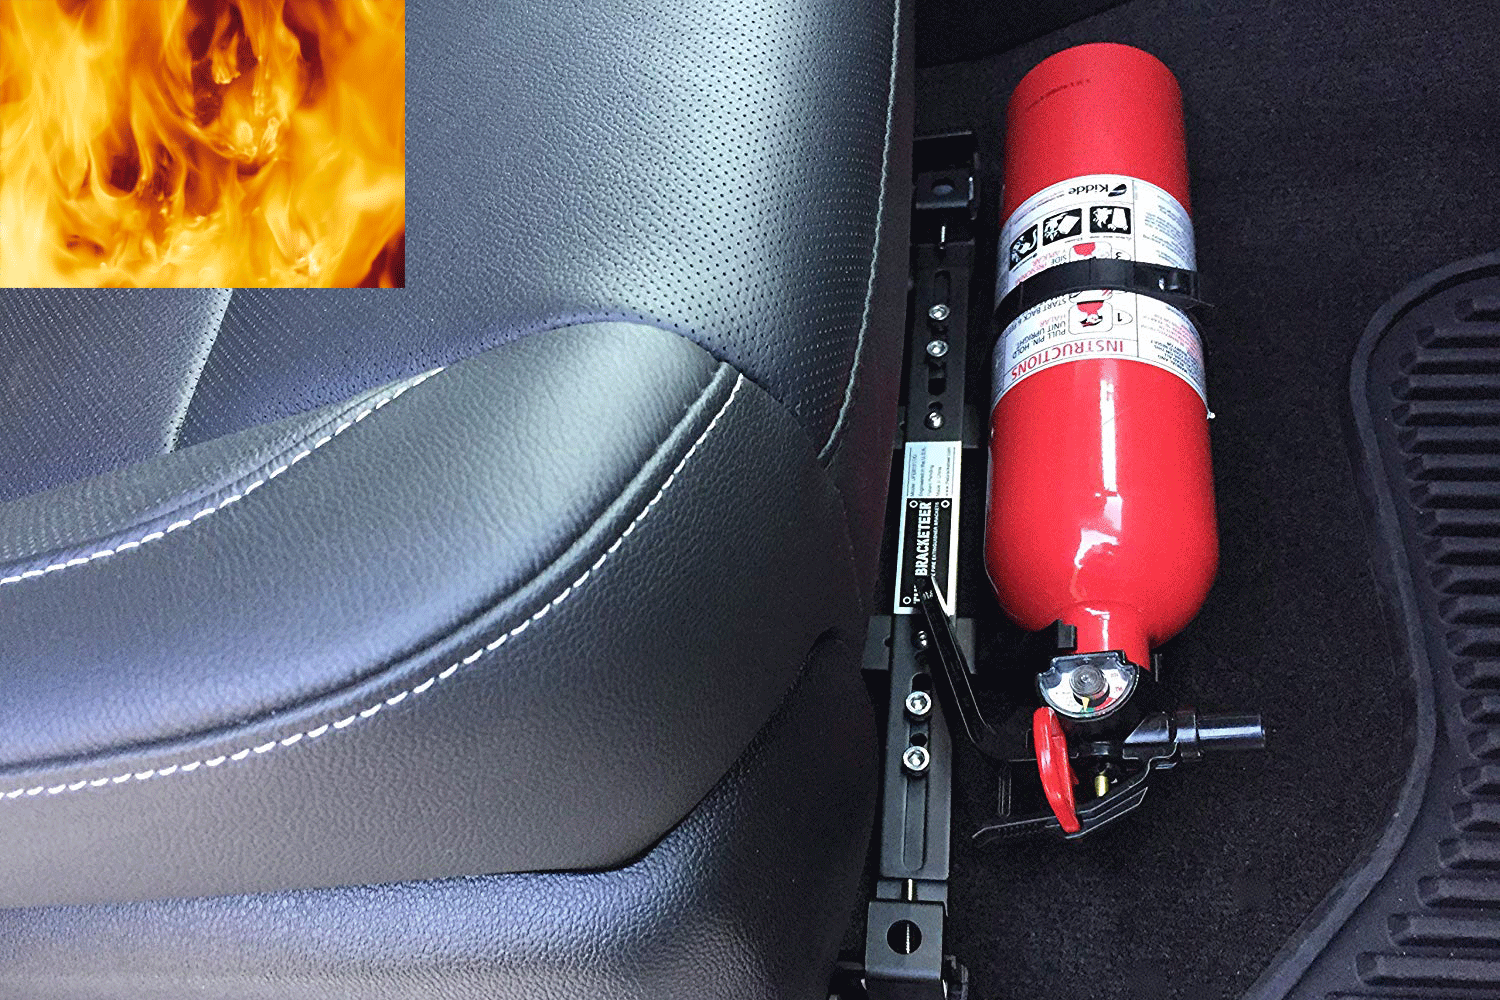 Bạn nên đặt bình chữa cháy ở dưới gầm ghế của xe